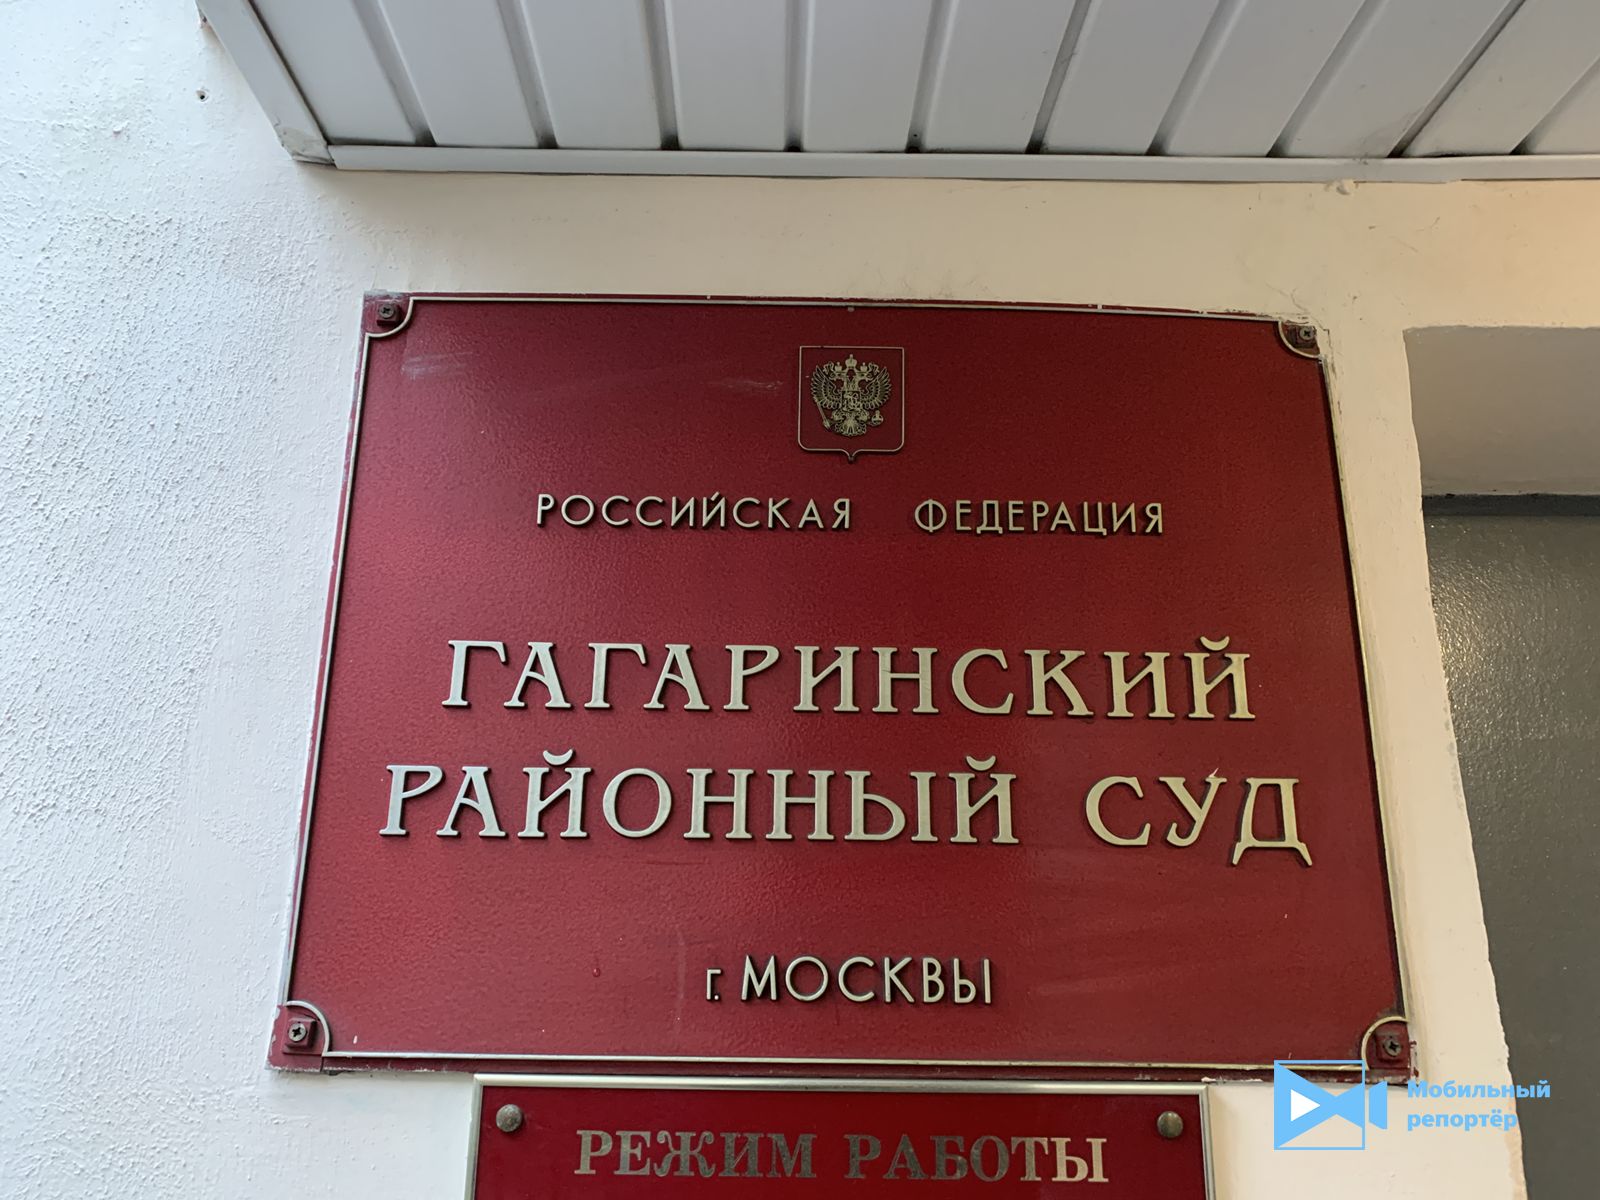 Вывеска суда. Табличка на здании суда. Гагаринский районный суд Москвы. Фасадная вывеска районного суда. Гагаринский район вывеска на здании.